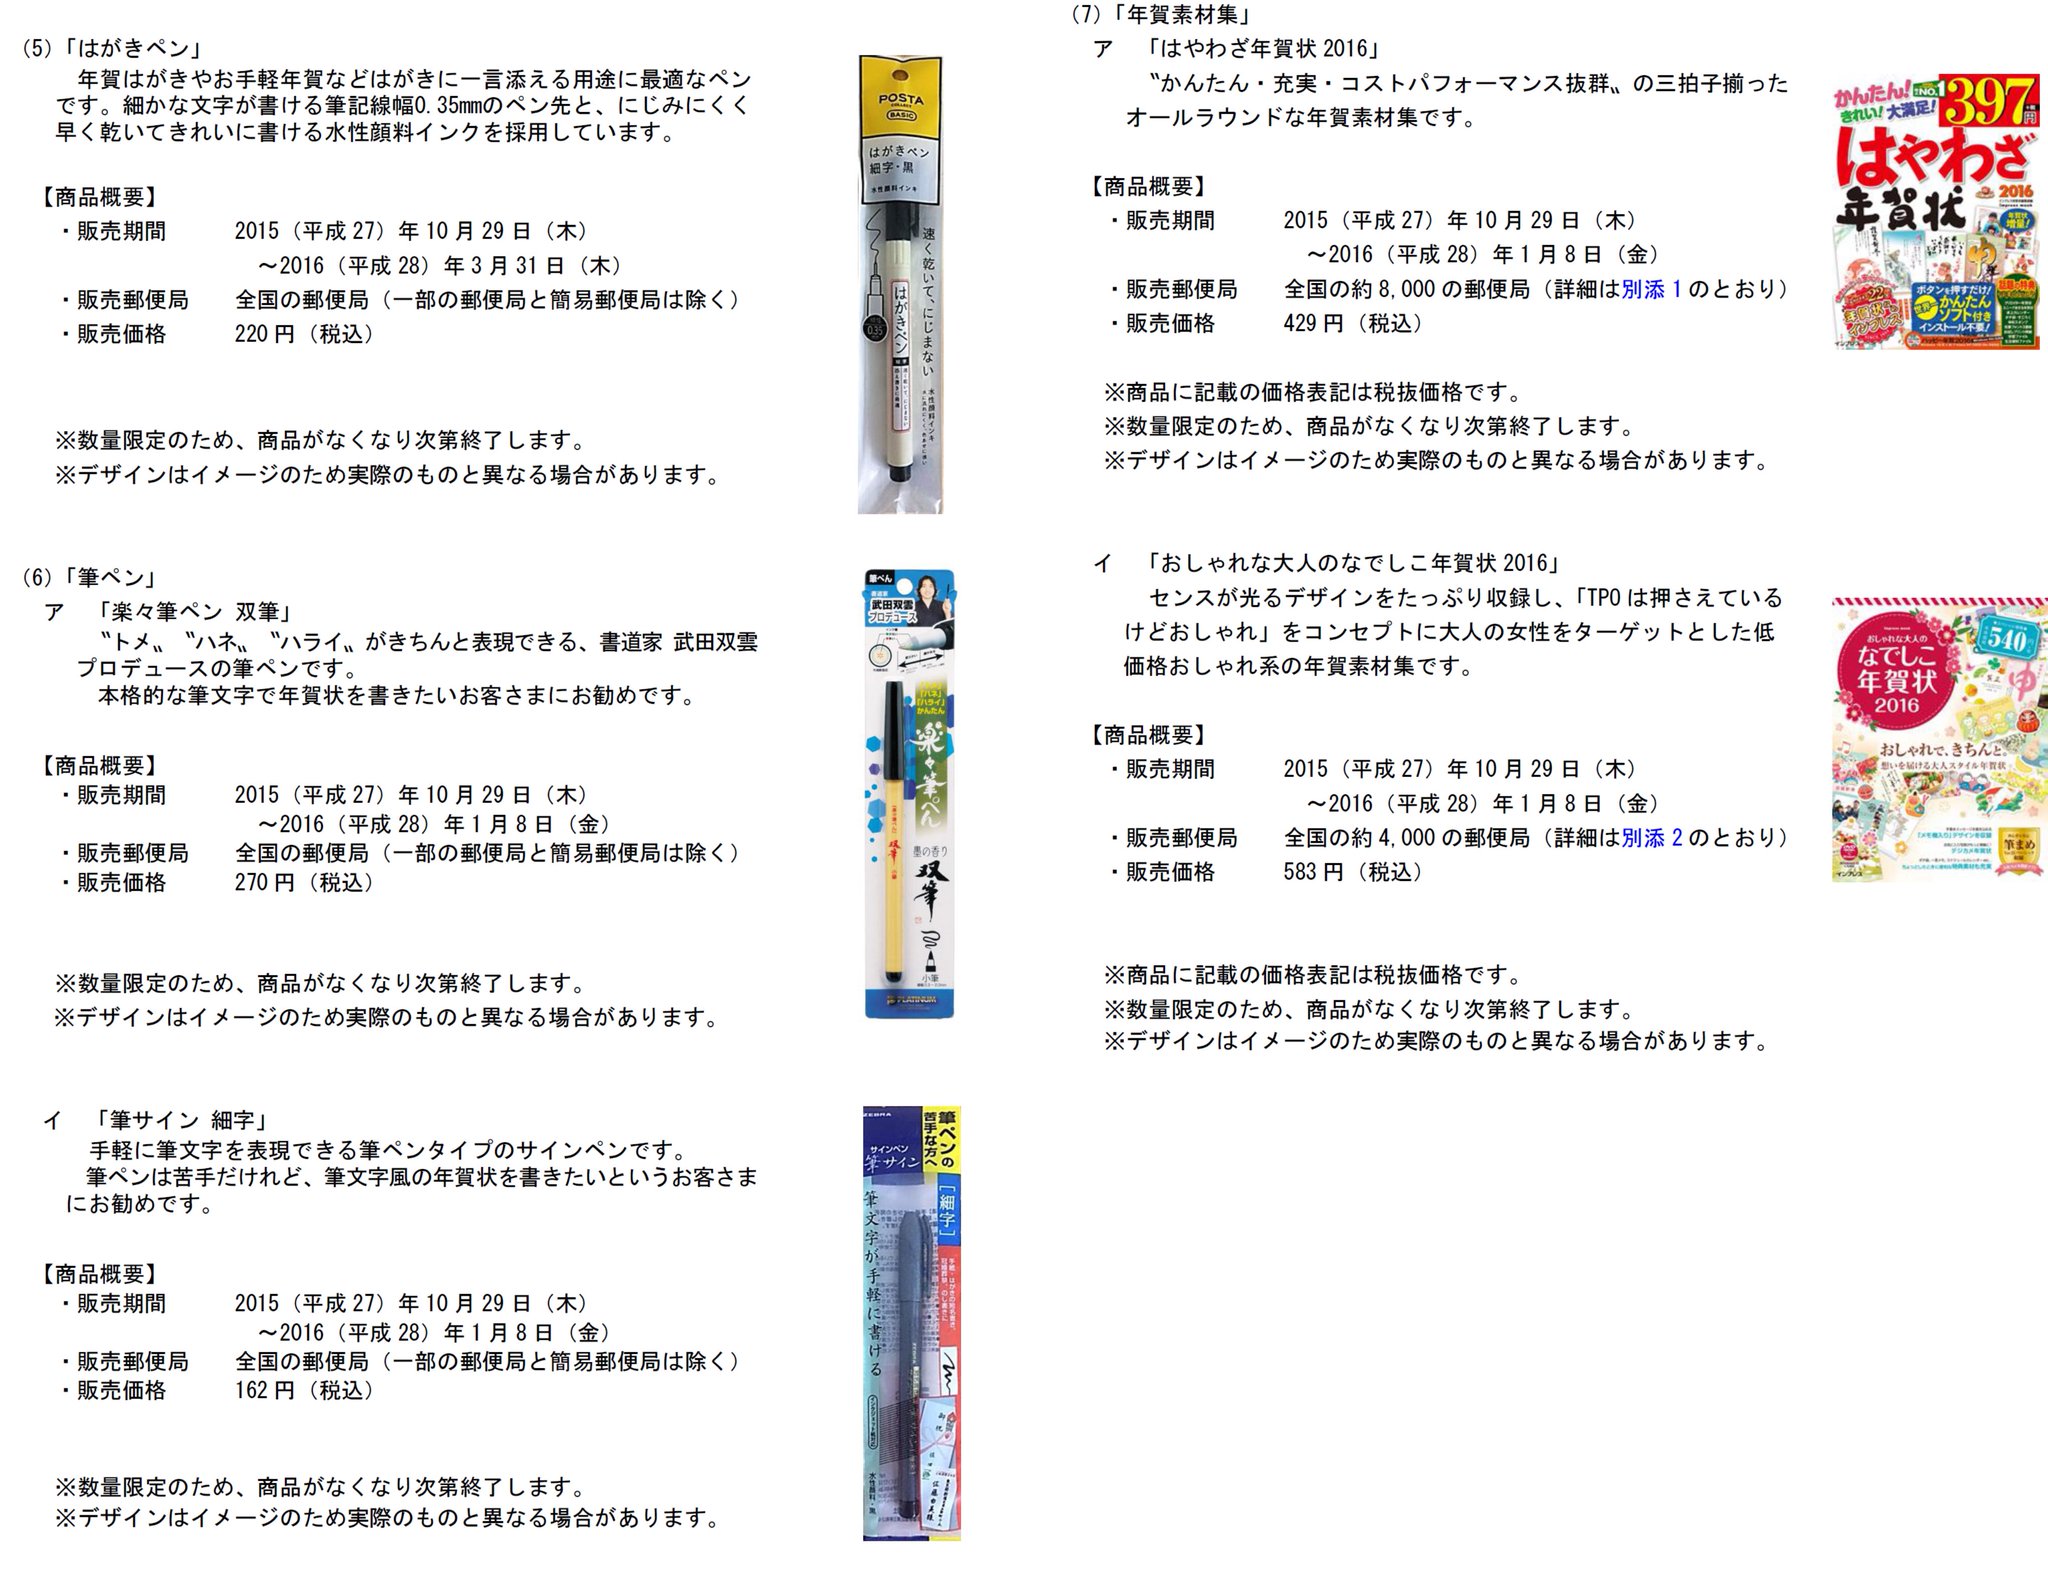 郵便局プチ情報 休止中 日本郵便プレスリリース 年賀関連商品 の販売開始 T Co Tybhcanokt T Co Emjckdzxm4